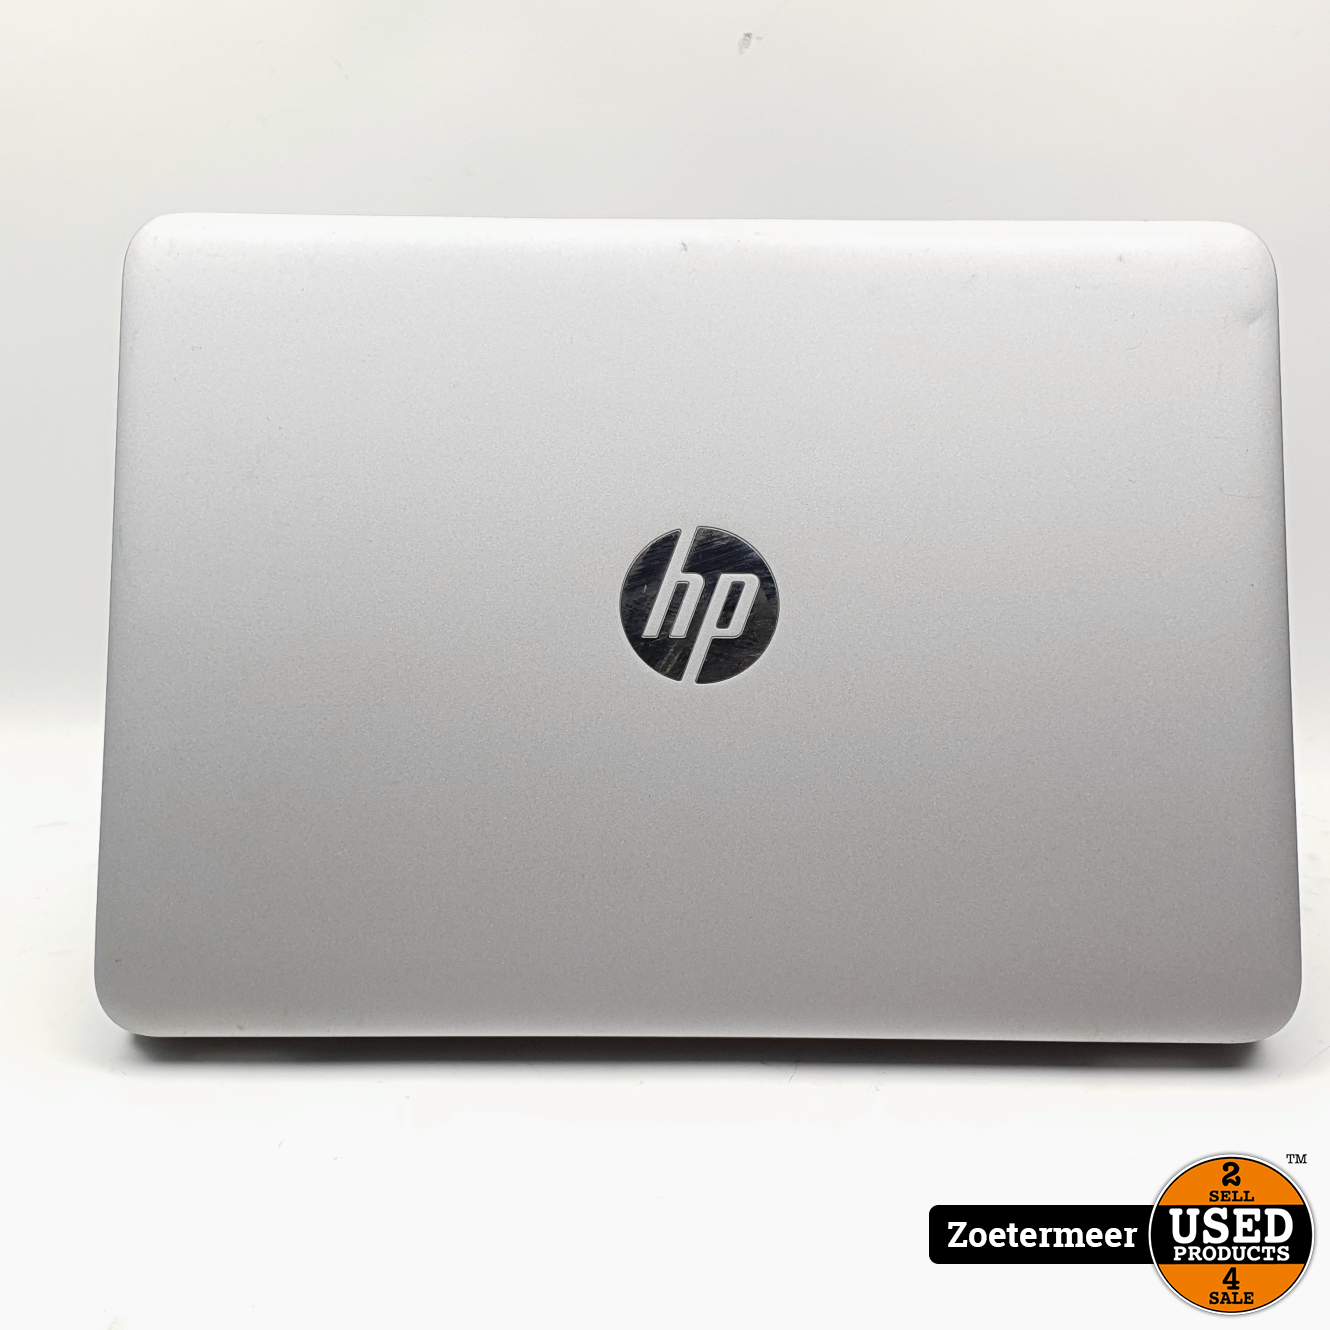 auteur geur Landelijk hp HP Elitebook 820 G4 Laptop || i5-7200U || 120GB SSD || 8GB RAM - Used  Products Zoetermeer